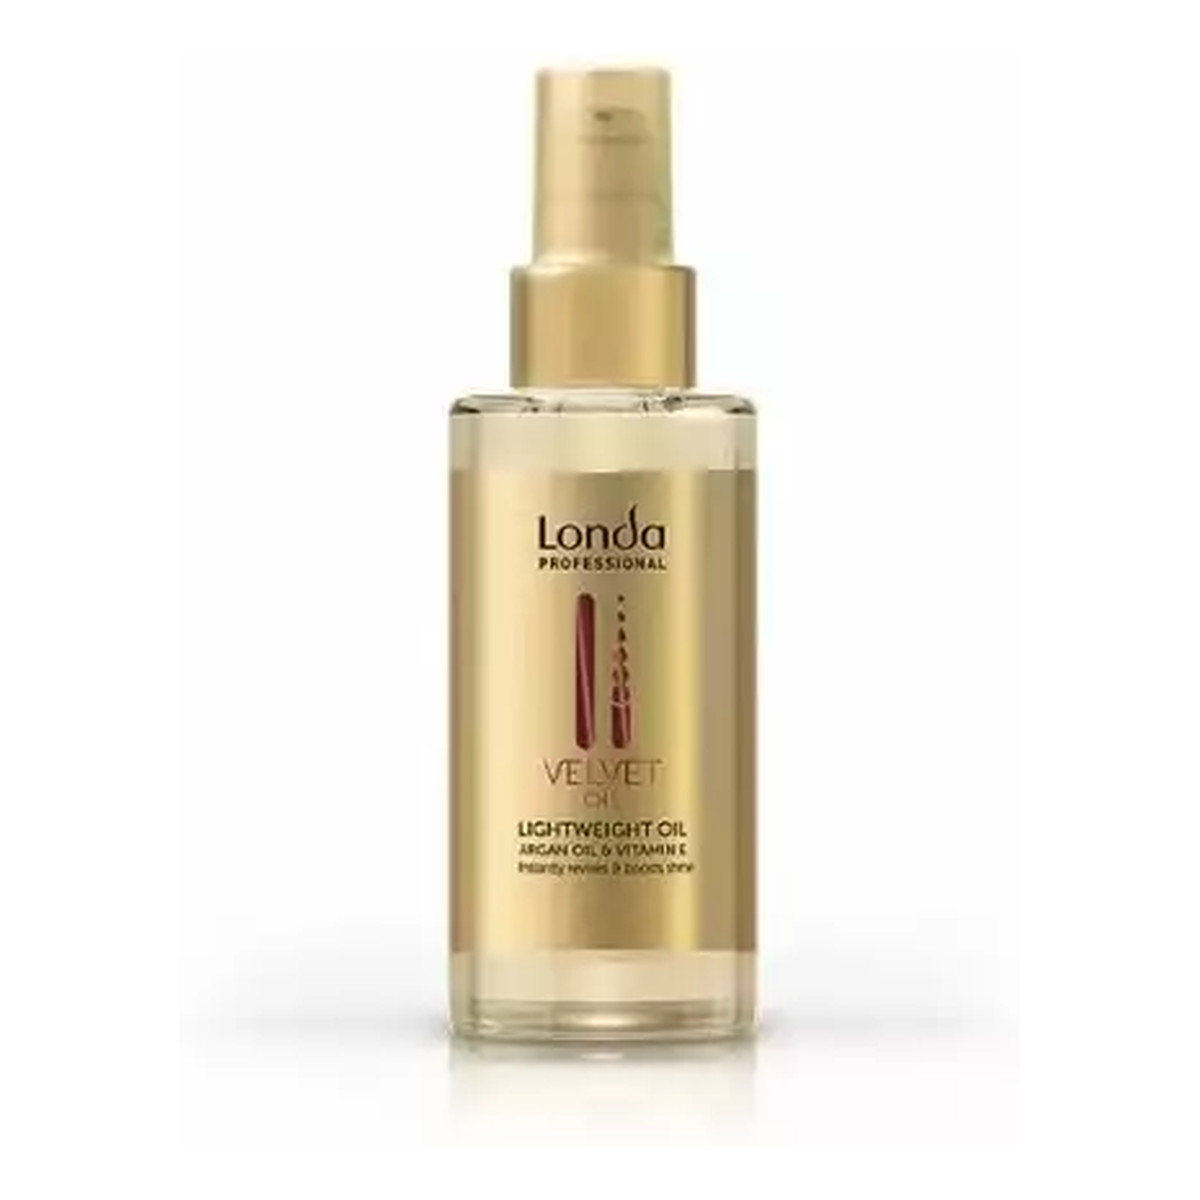 Londa Professional Velvet Oil, odżywczy olejek do włosów 100ml